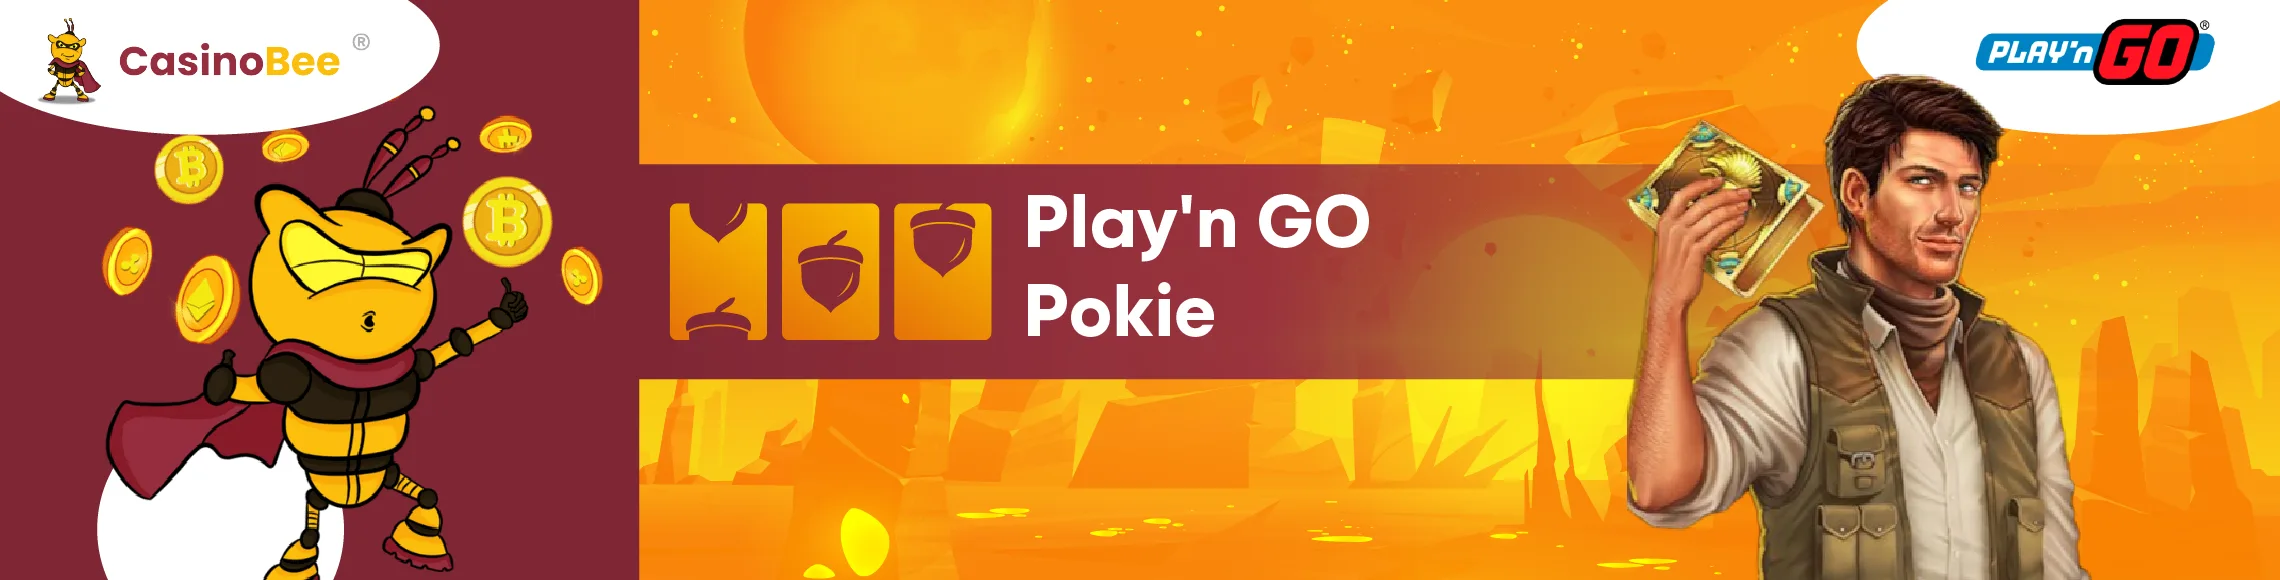 Play'n GO Pokies